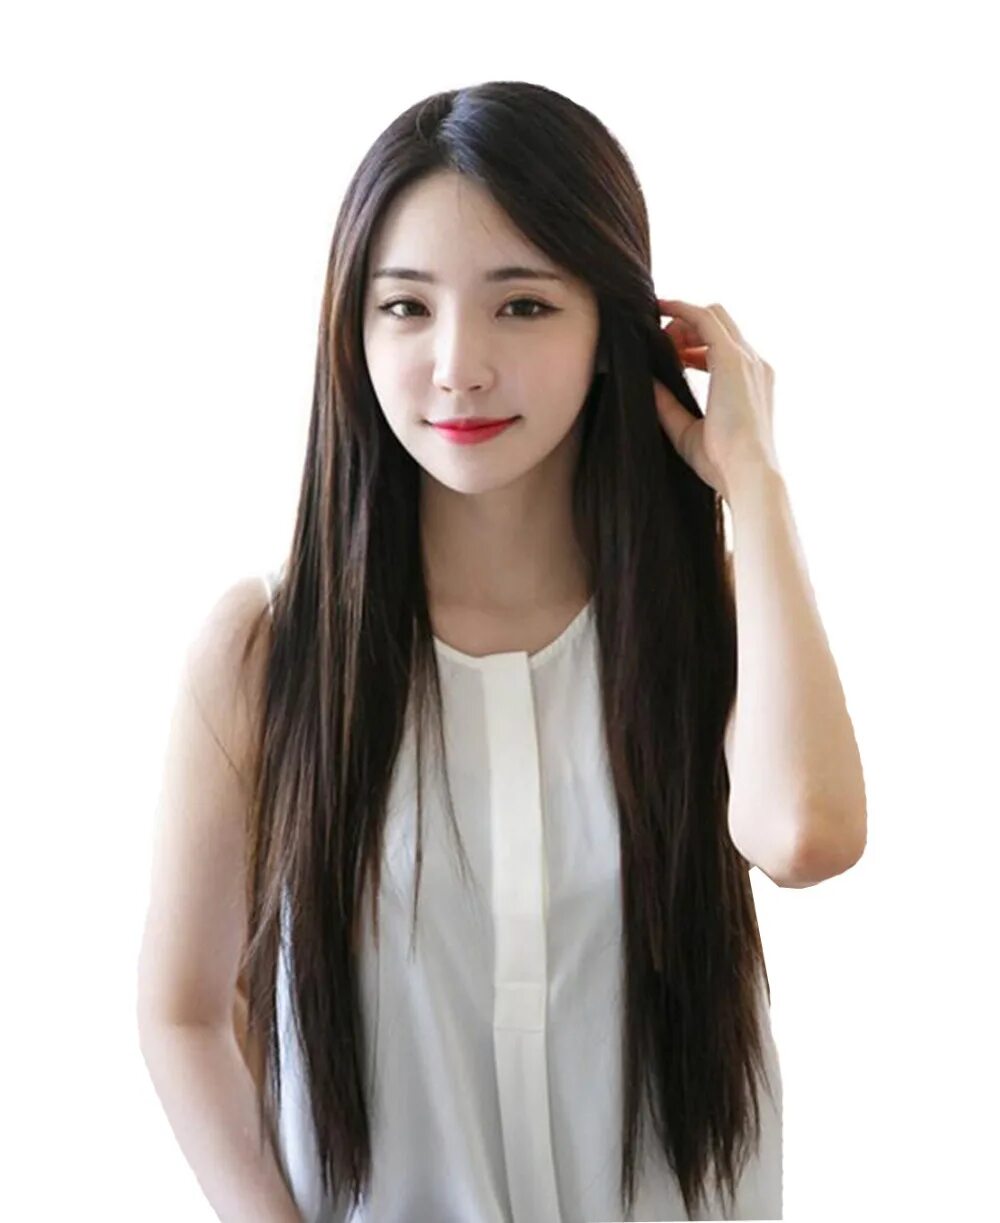 Кореянки 2021. Красивые кореянки. Японки с длинными волосами. She has long hair